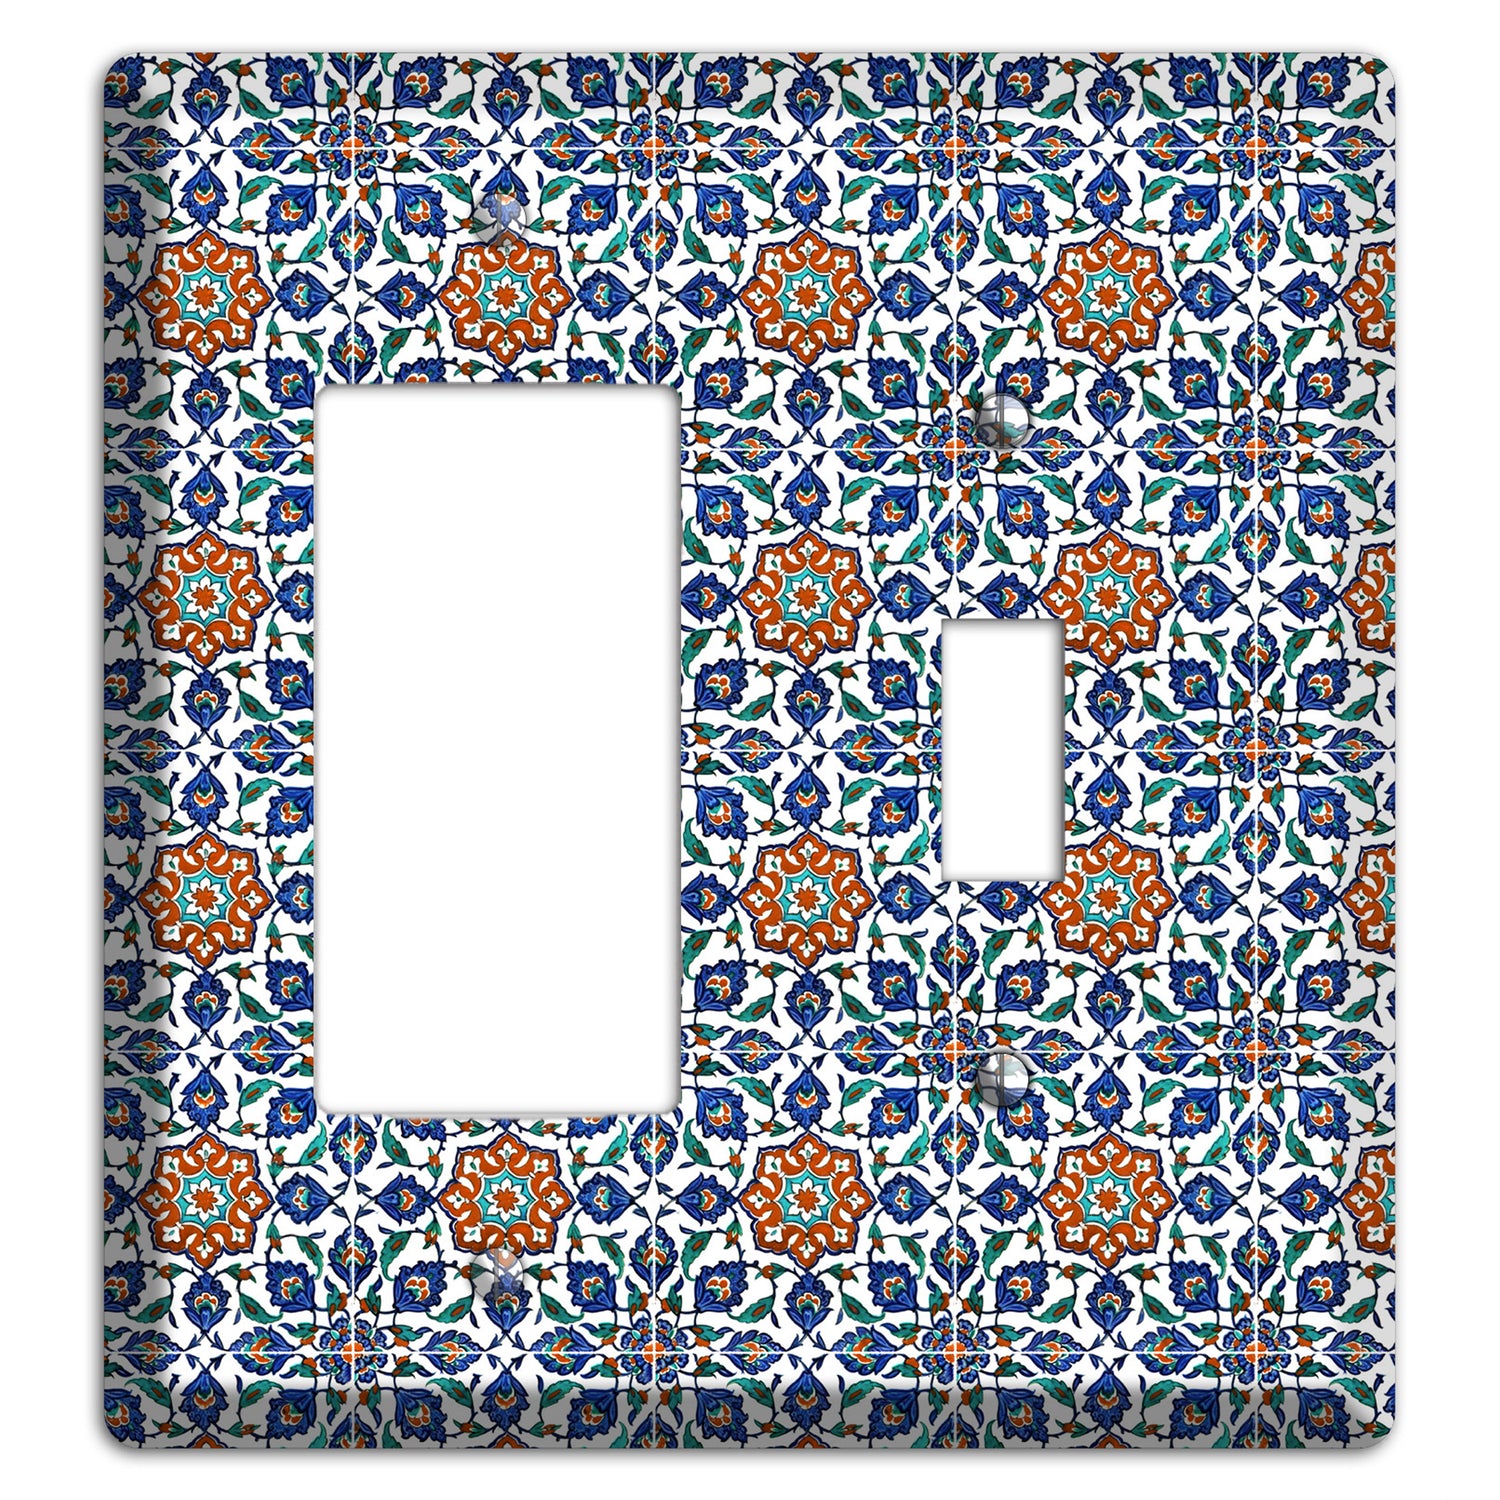 Ornate Floral Tile Rocker / Toggle Wallplate